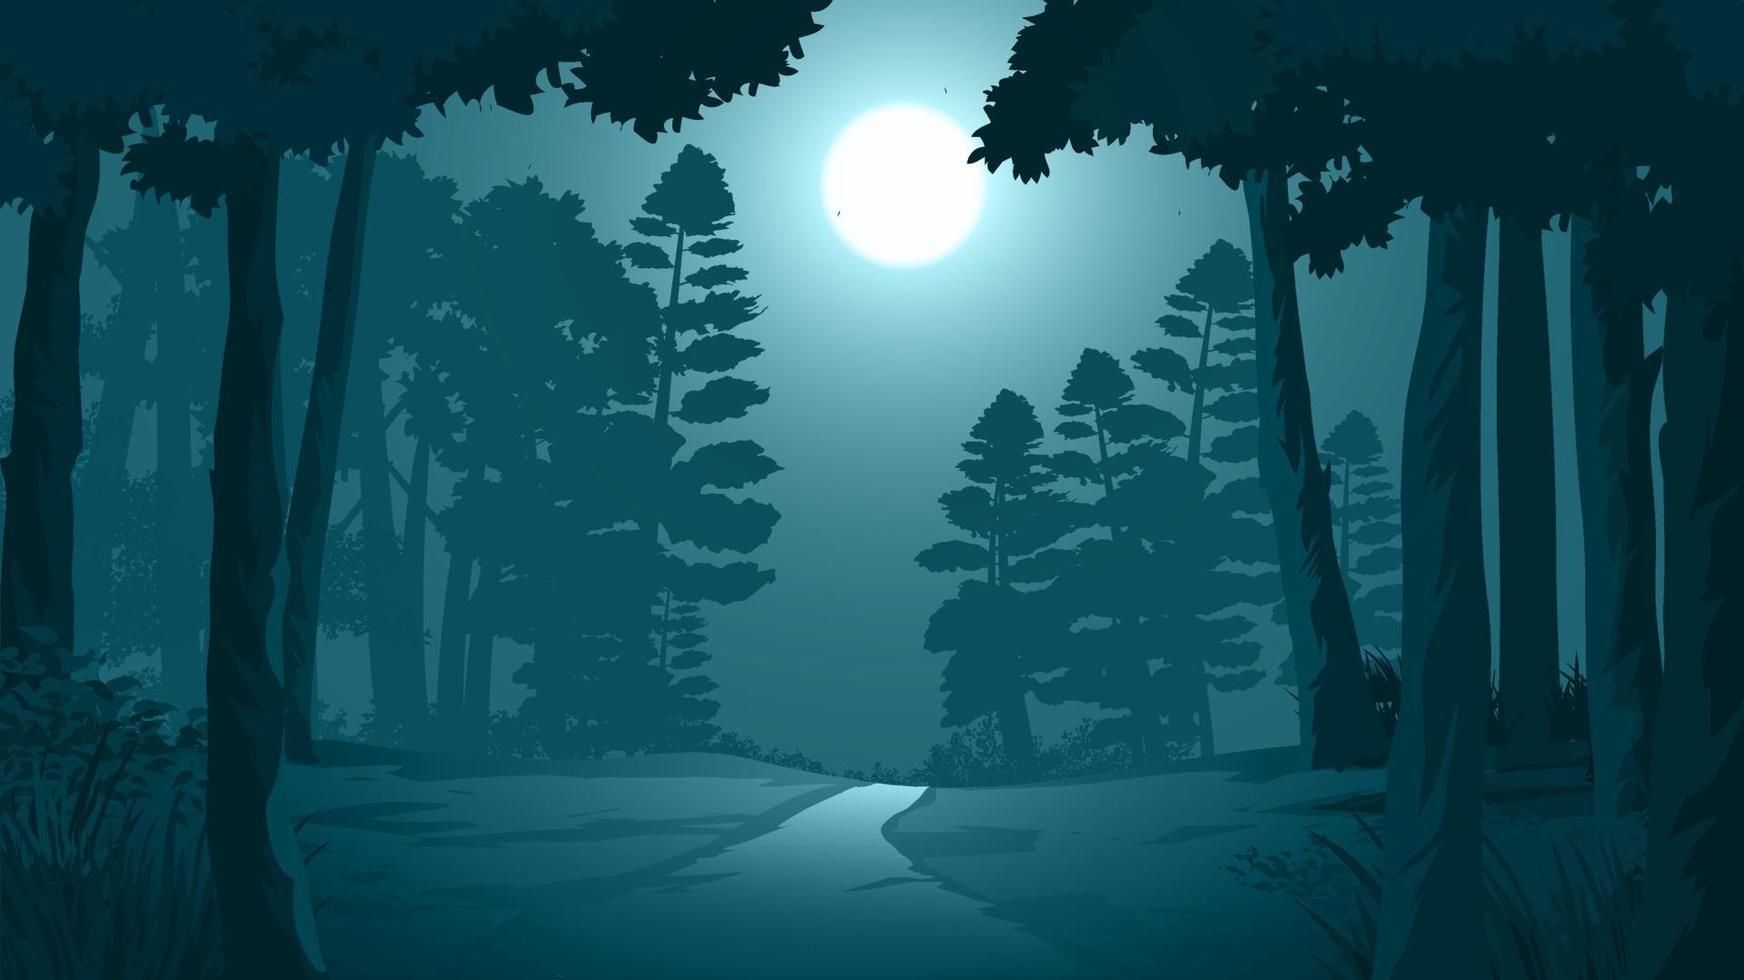 percorso attraverso l'illustrazione della foresta oscura con il chiaro di luna vettore